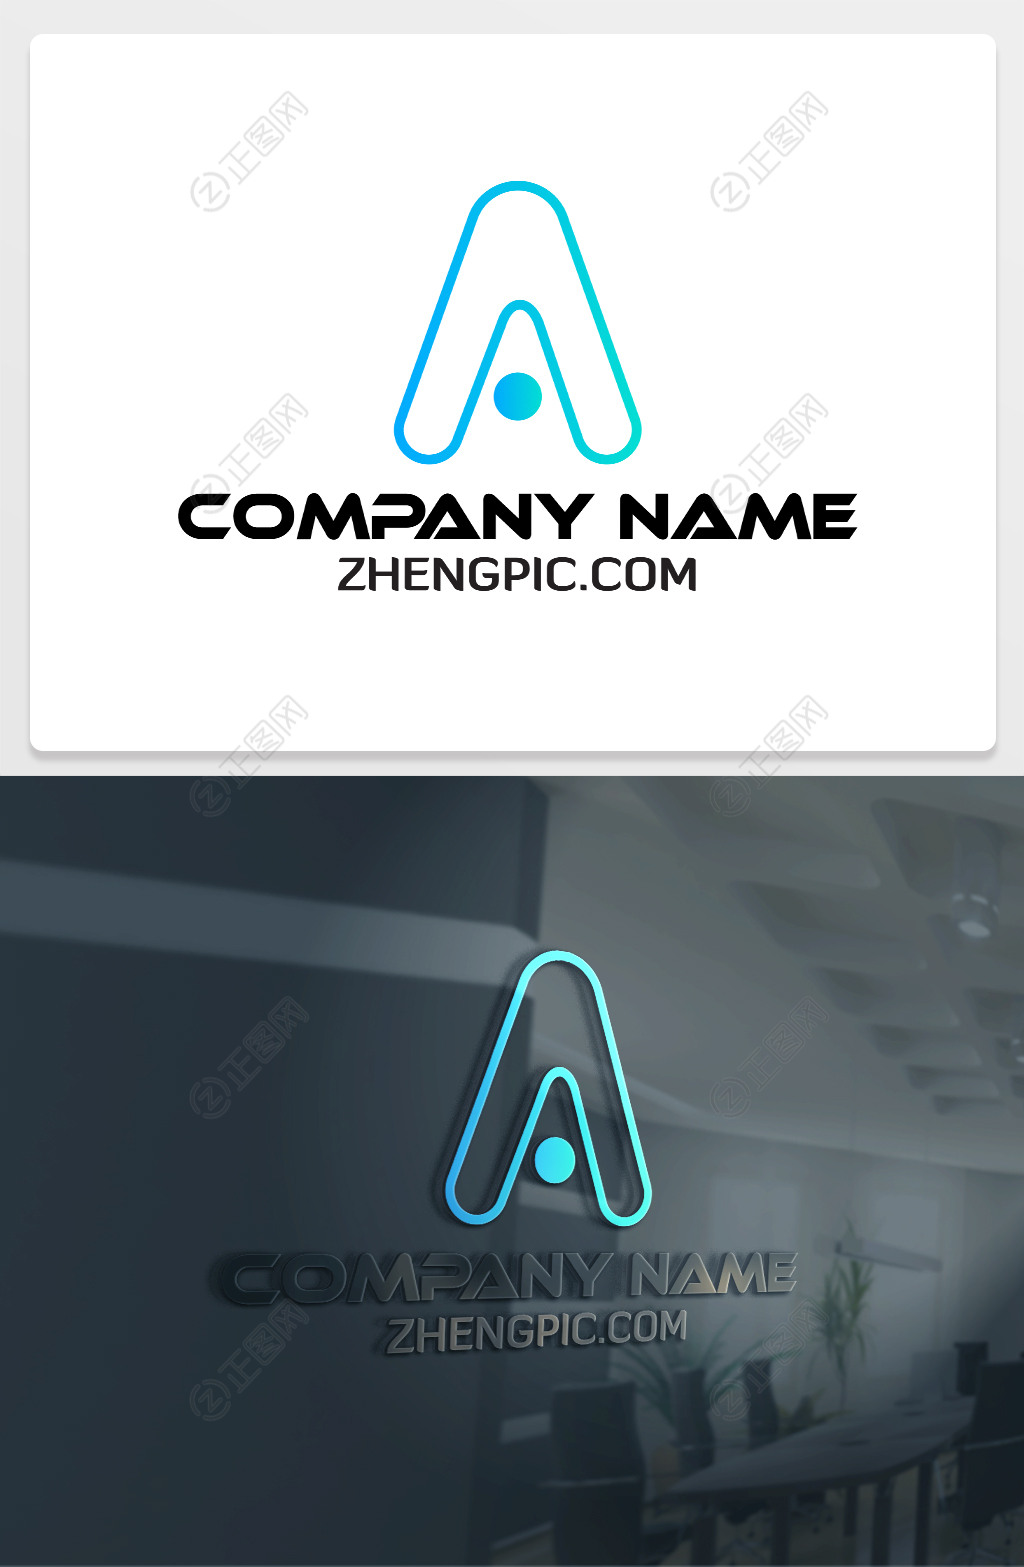 空心A字母边框线条logo设计